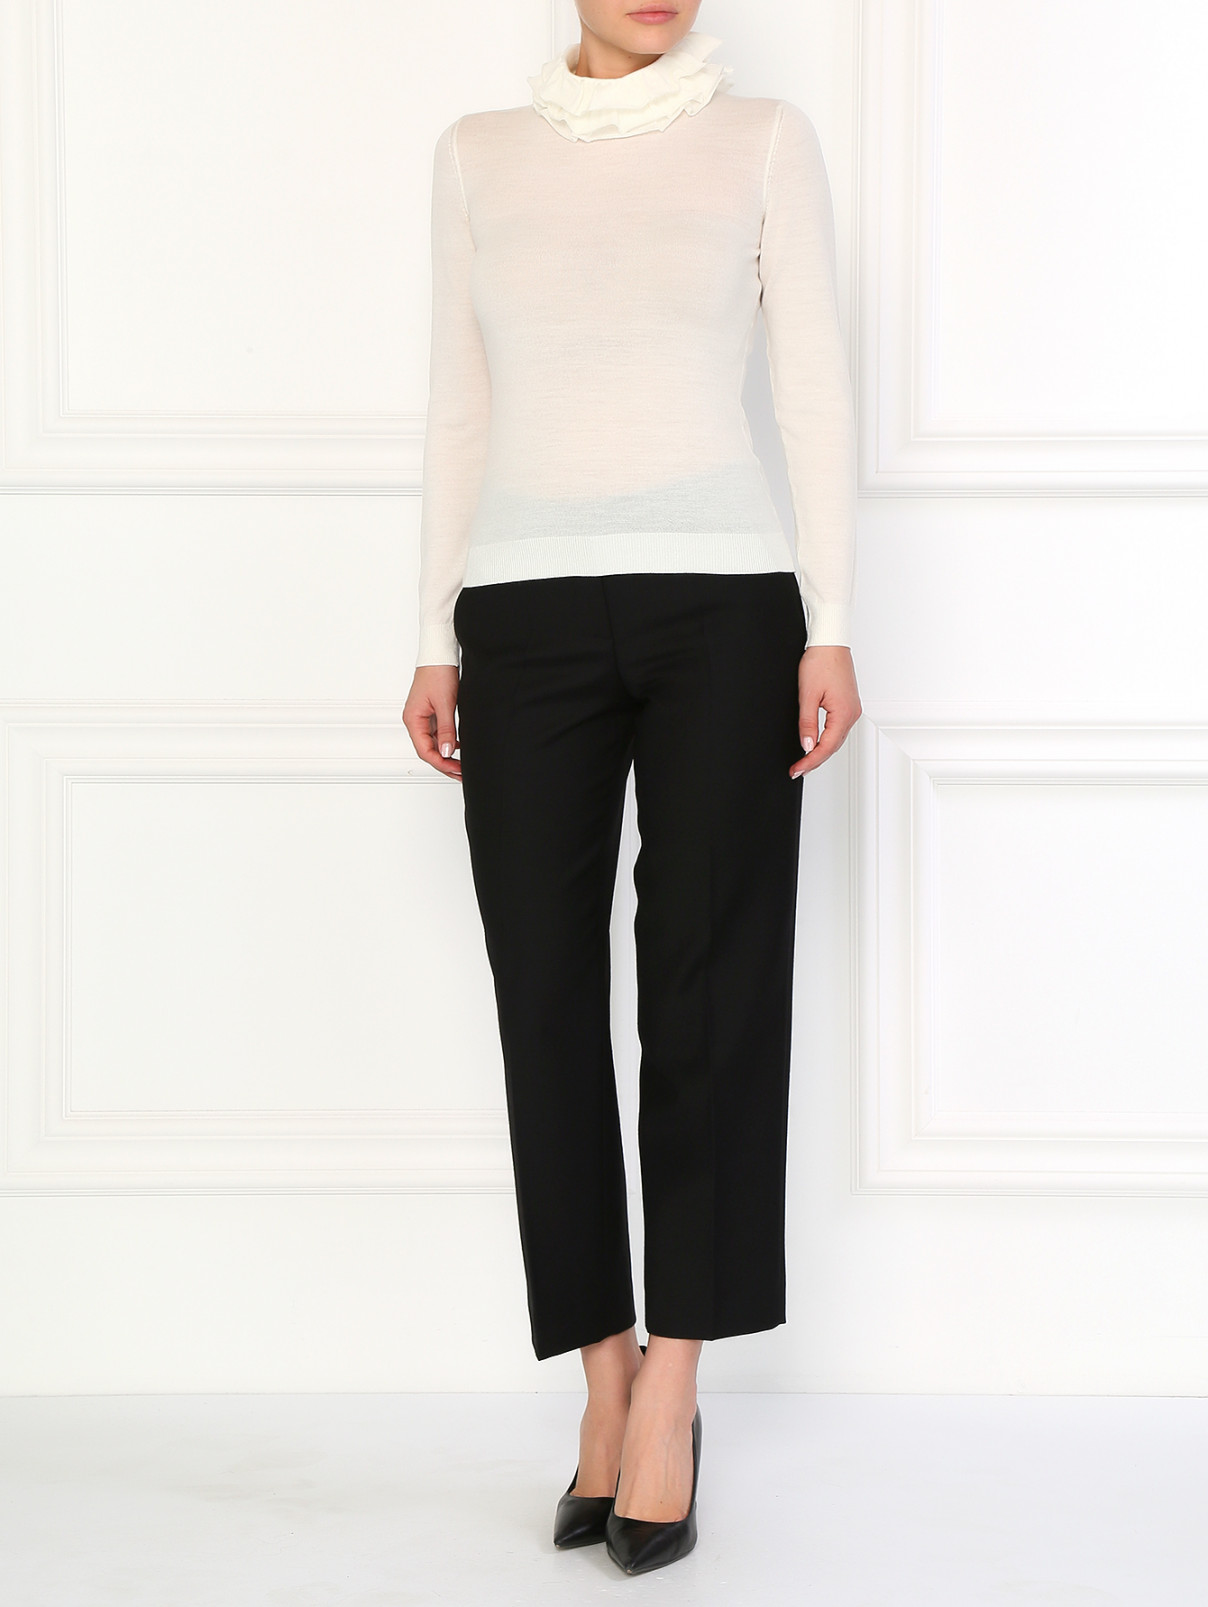 Шерстяные брюки прямого фасона Moschino Boutique  –  Модель Общий вид  – Цвет:  Черный